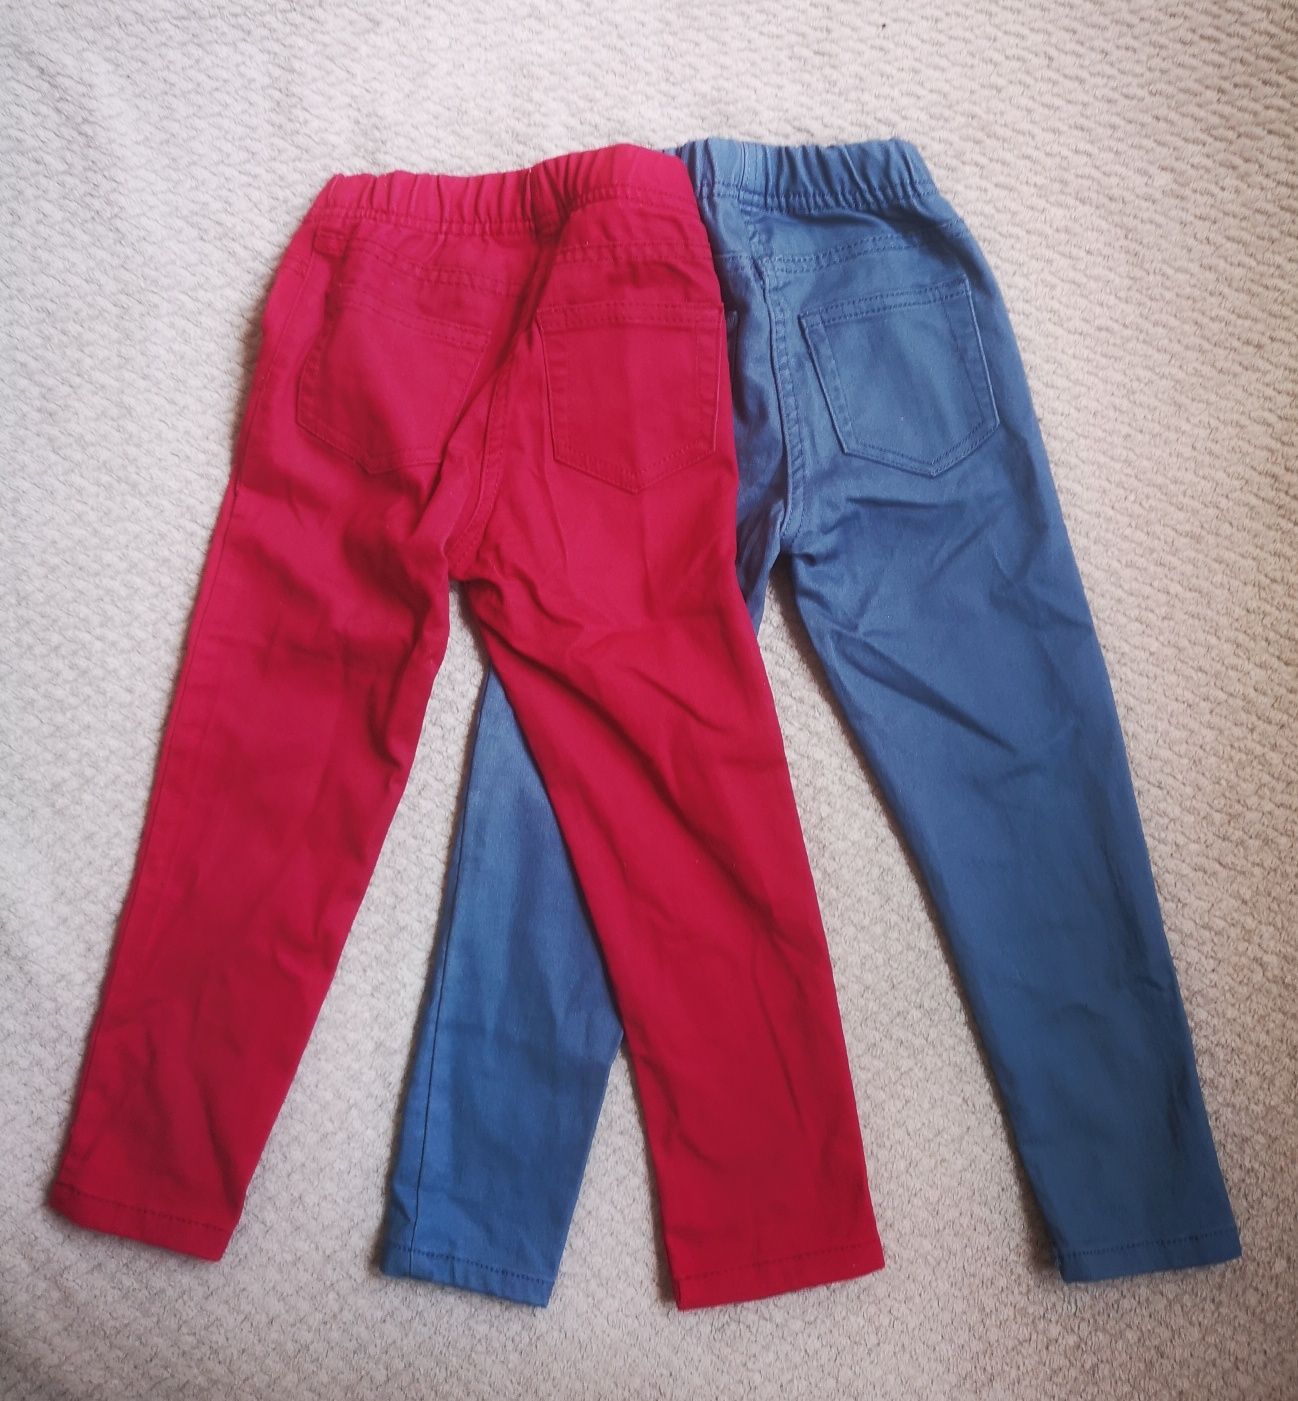 Nowe 2 pary spodni dla dziewczynki rozmiar 98/104.